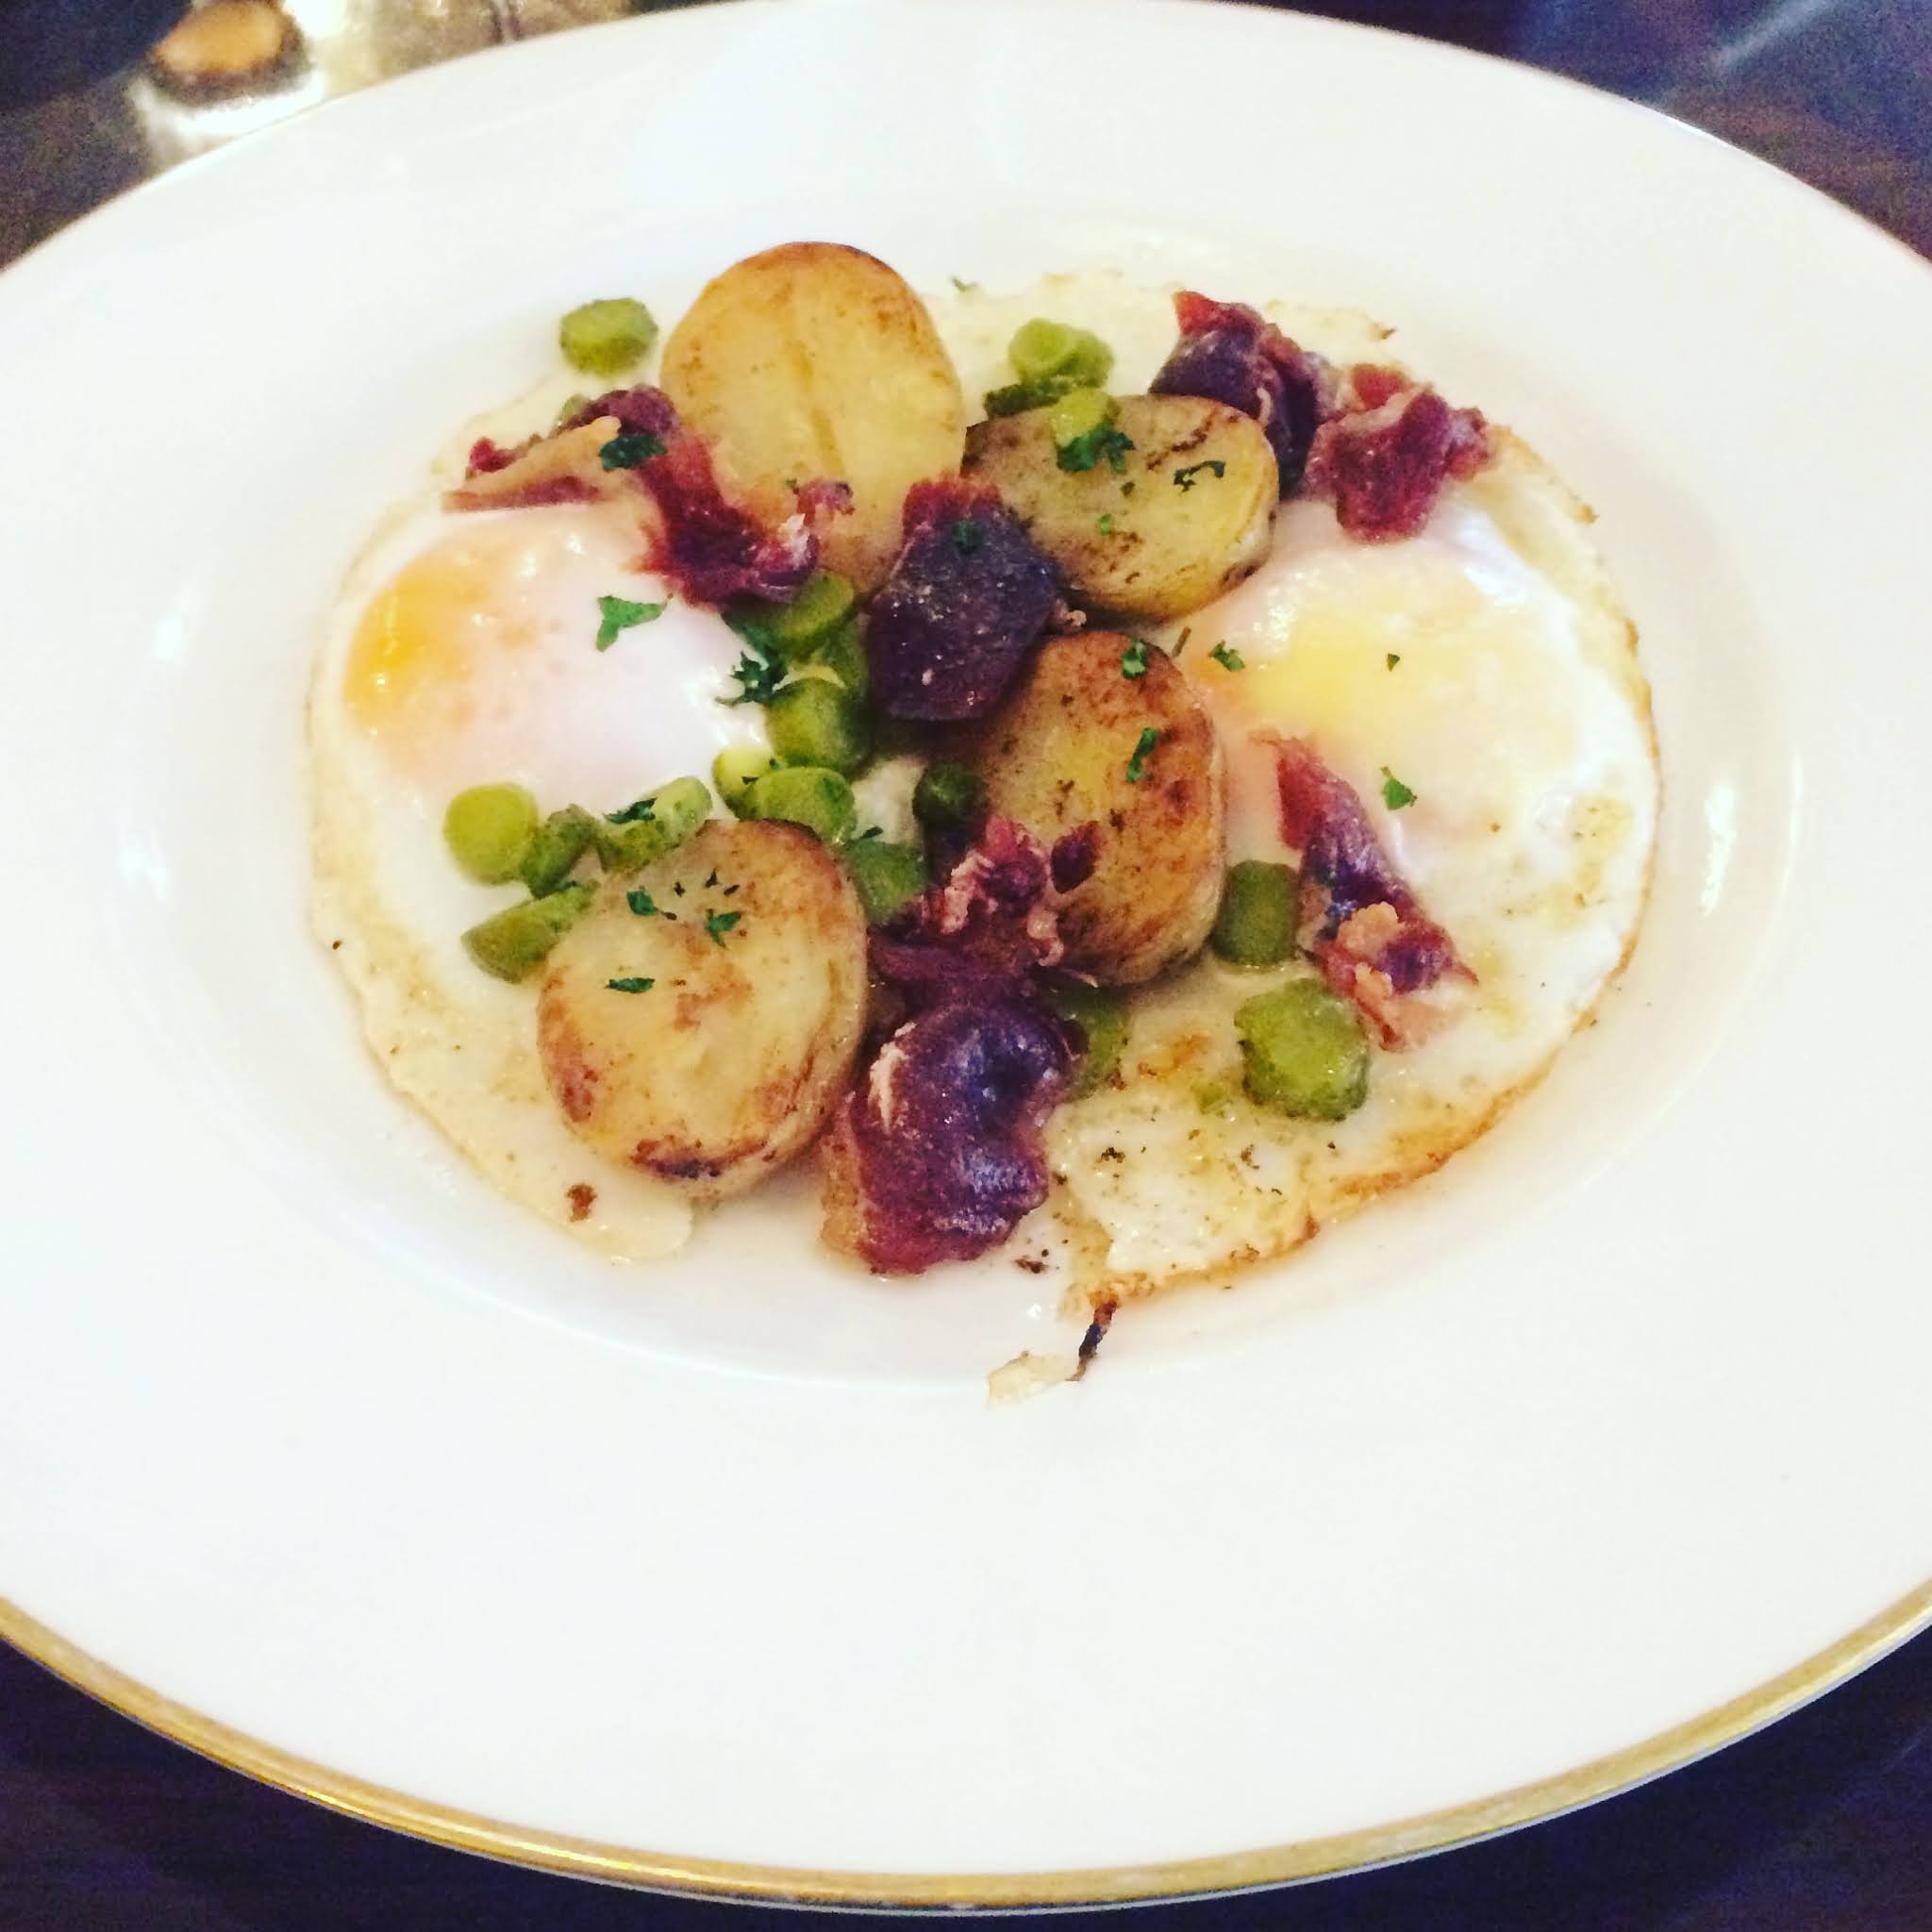 Plate of Fried potatoes, duck eggs and jamón at luxury London breakfast spot 45 Jermyn Street